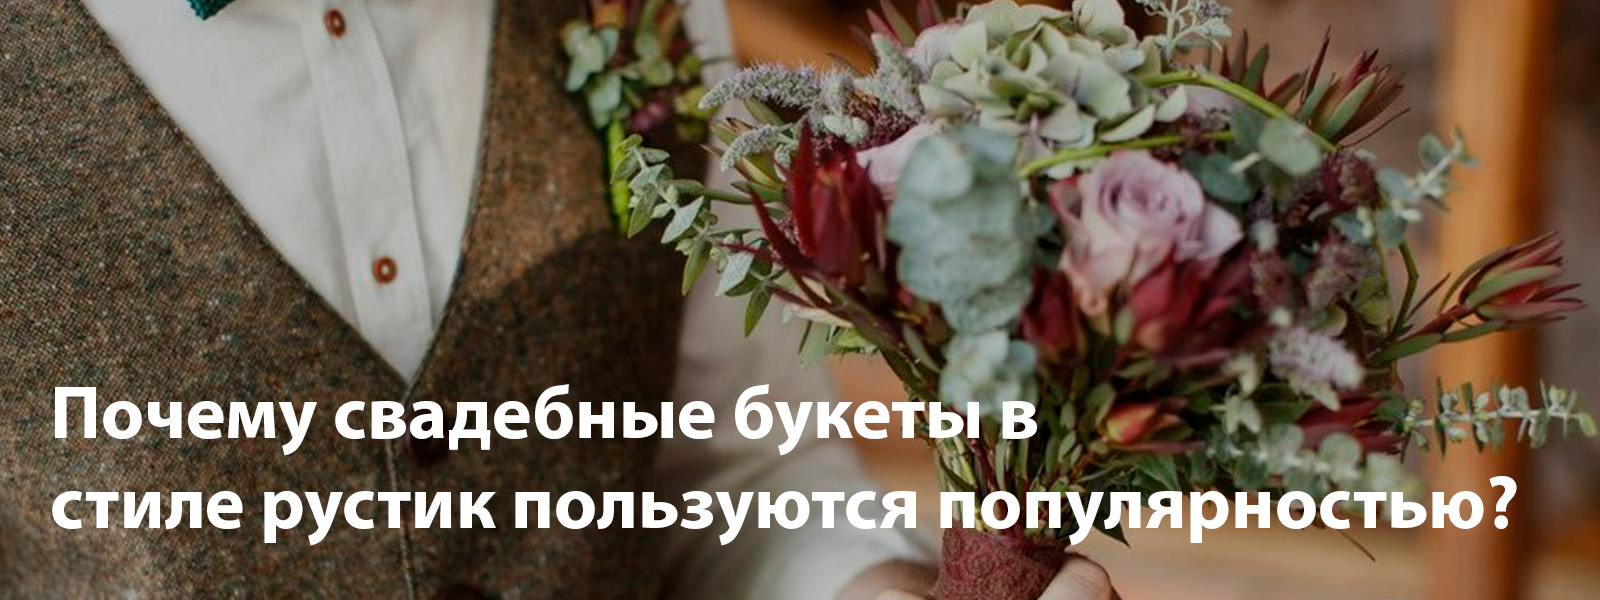 Почему свадебные букеты в стиле рустик пользуются популярностью?